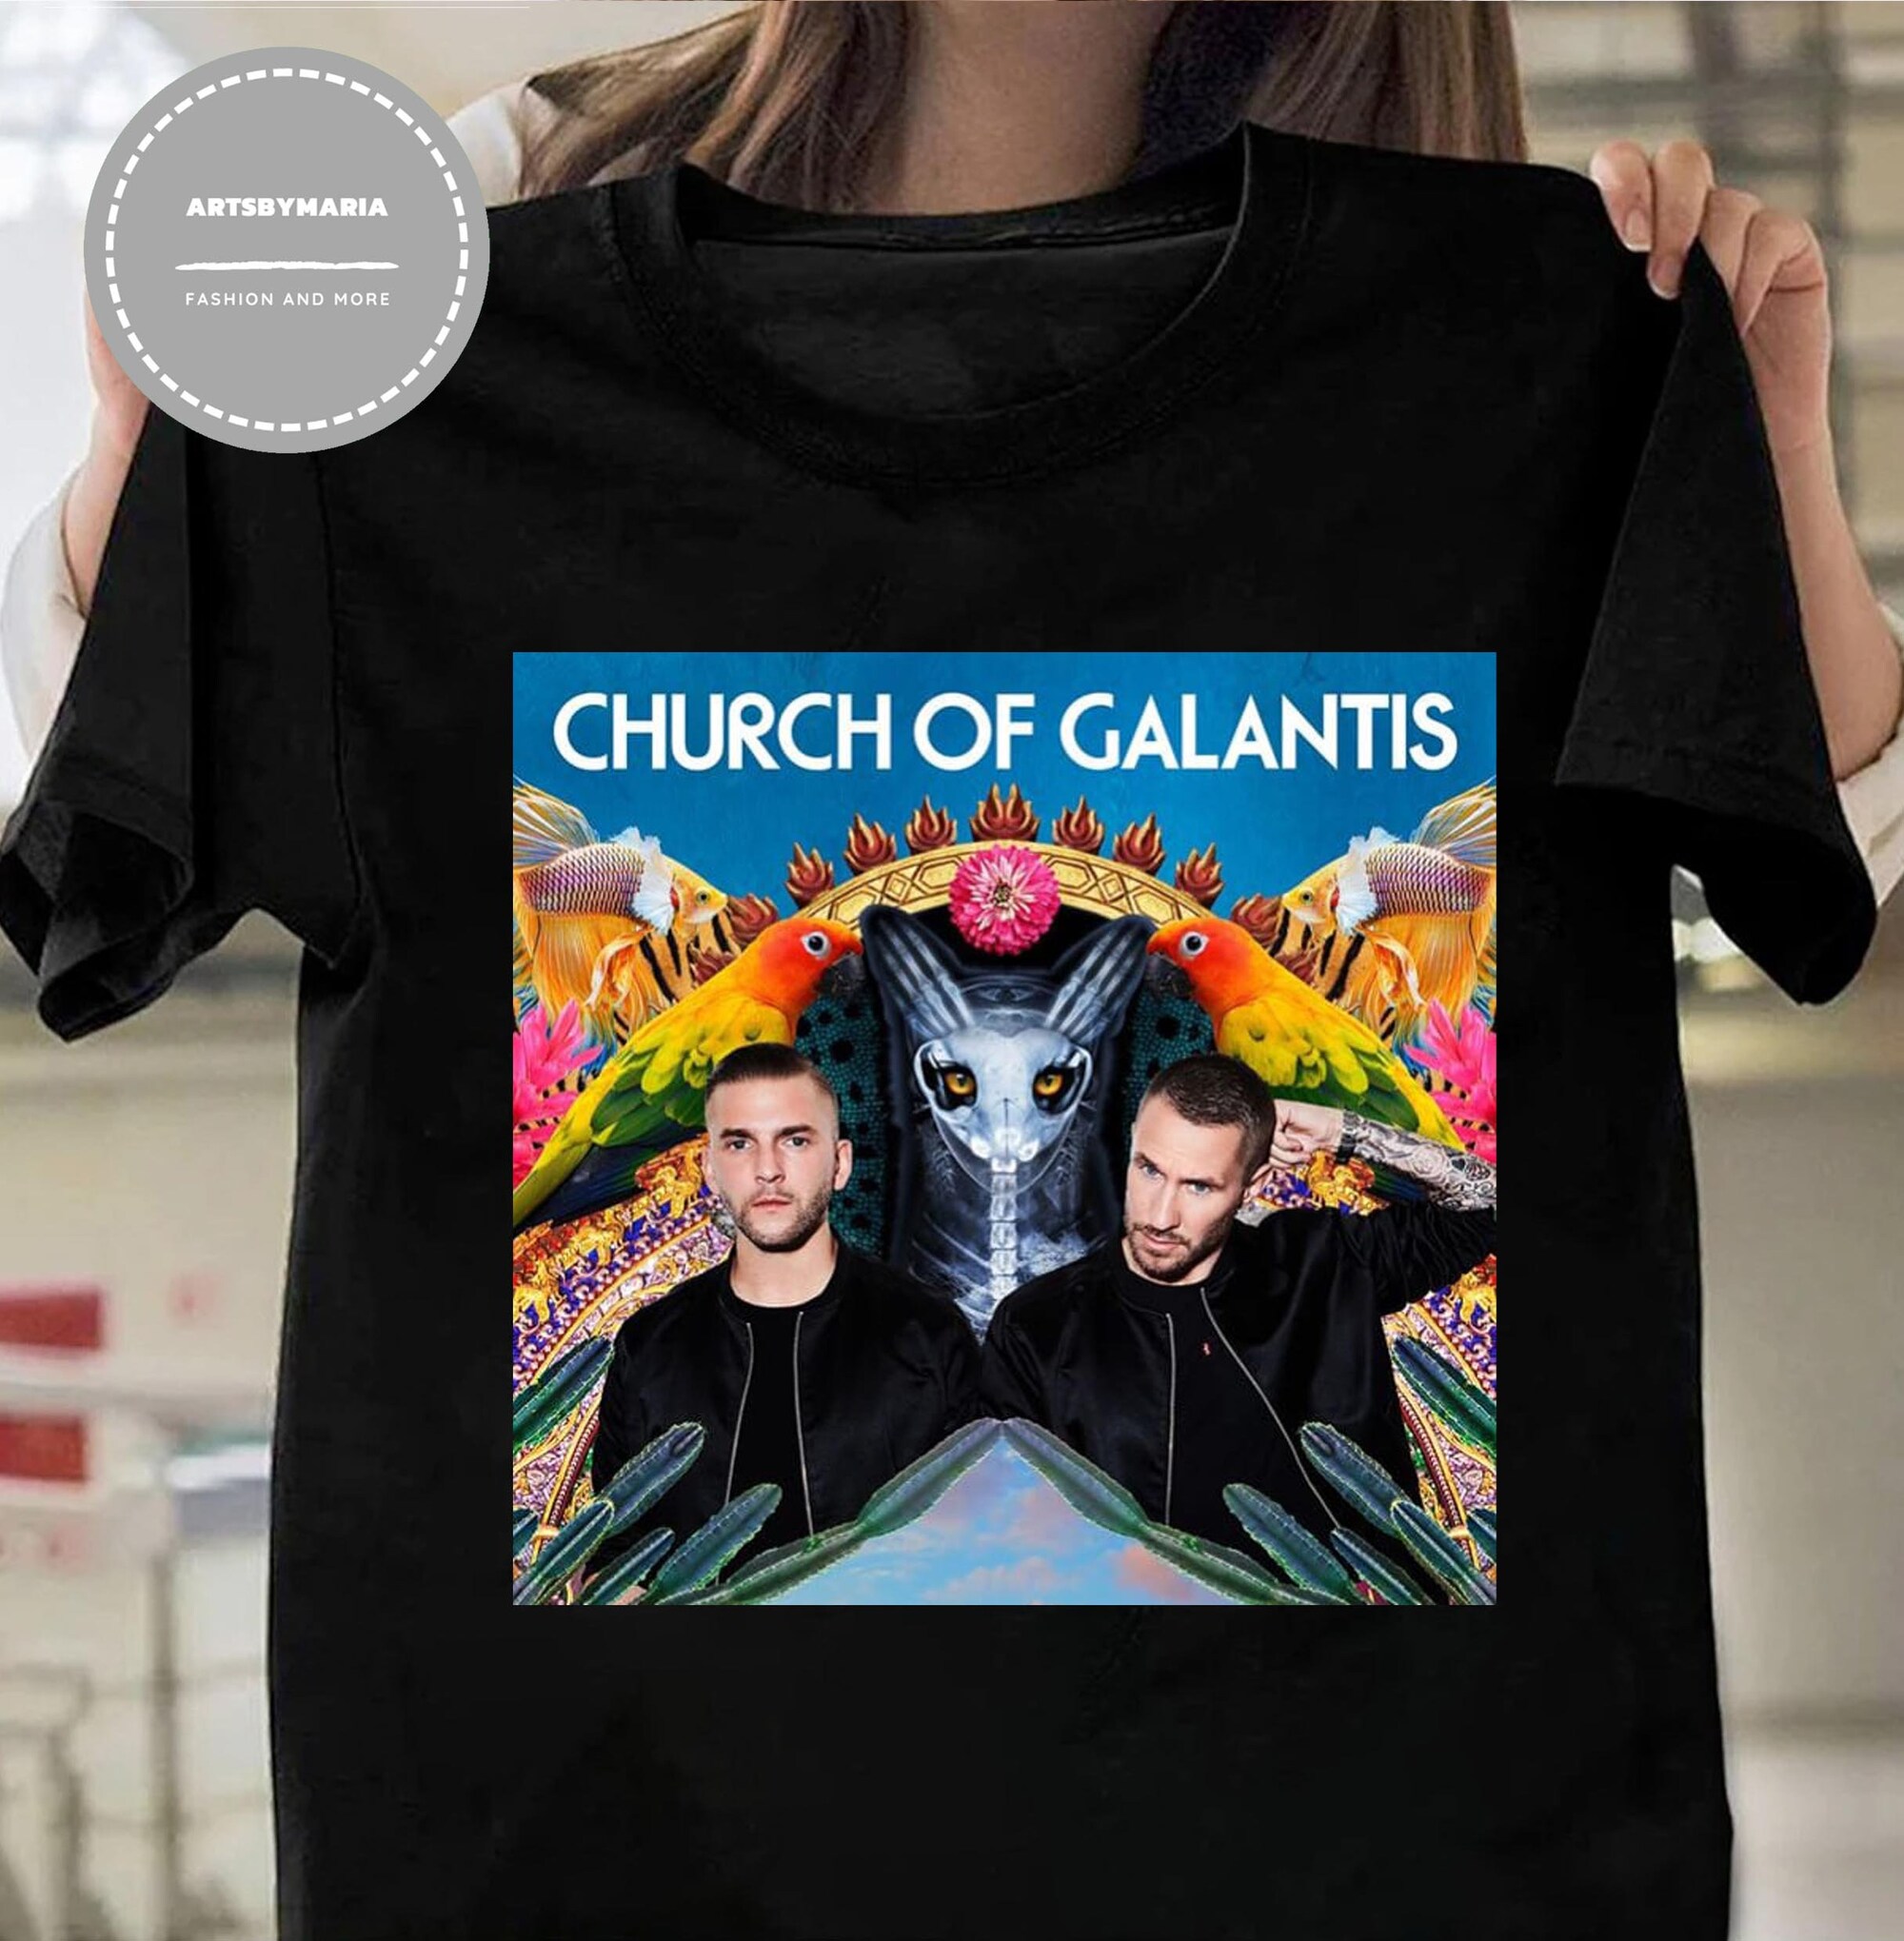 Discover Church of Galantis shirt, Galantis Festival Music shirt